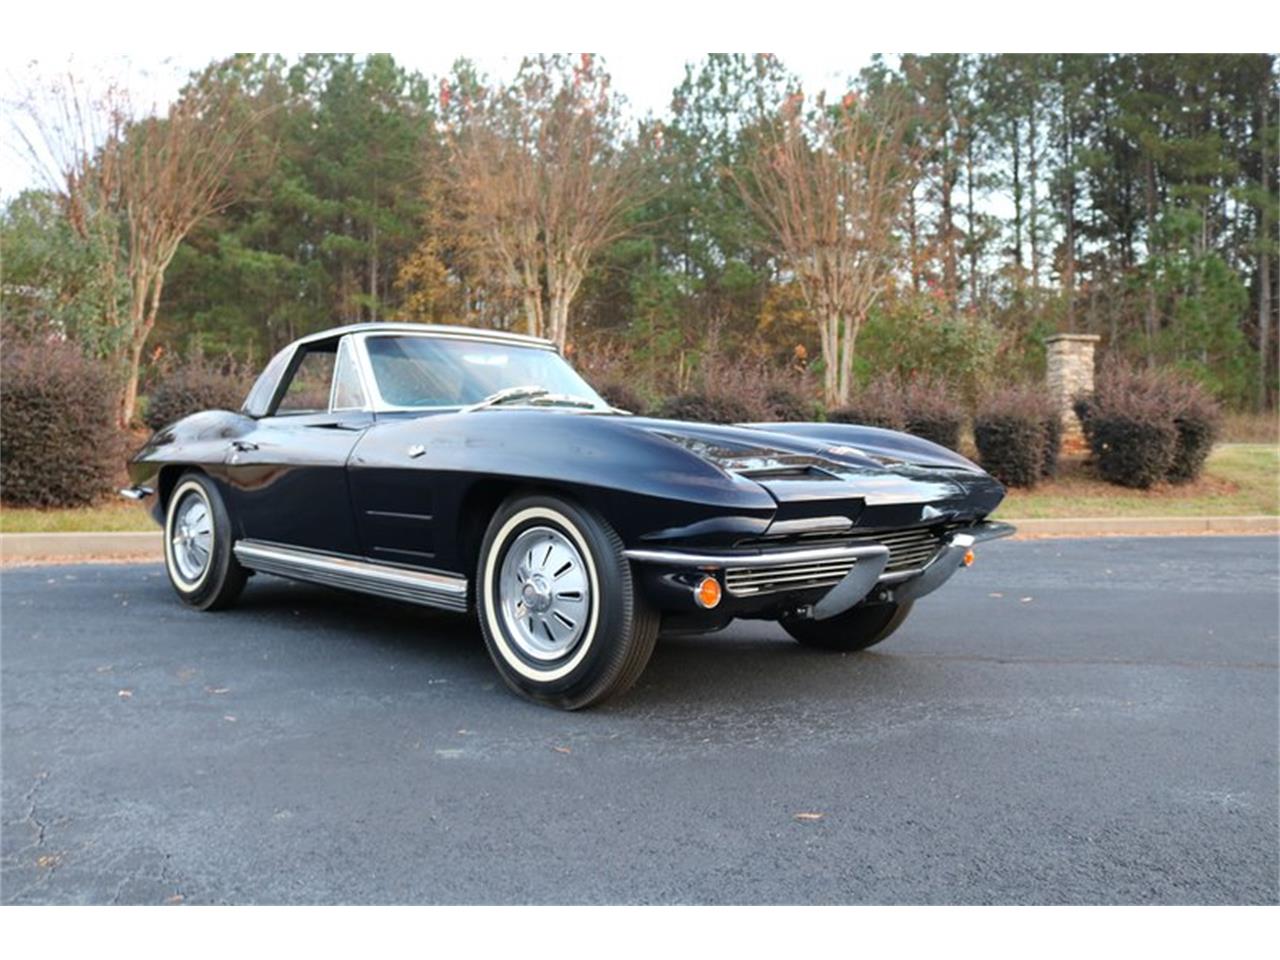 1964 Chevrolet Corvette for sale in Greensboro, NC